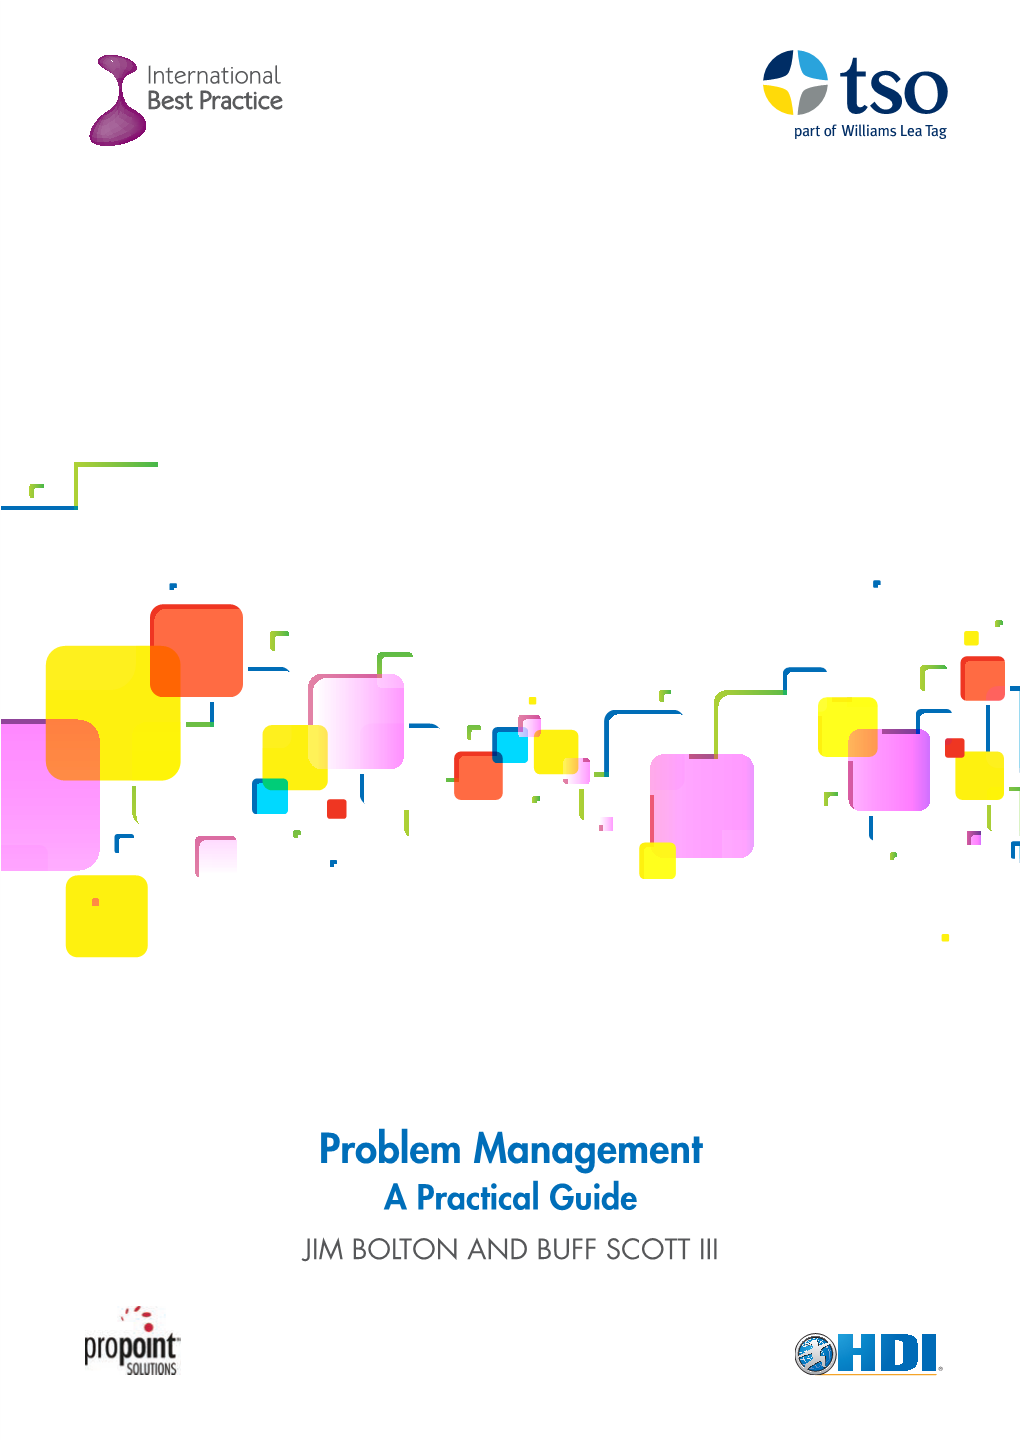 Problem Management: a Practical Guide